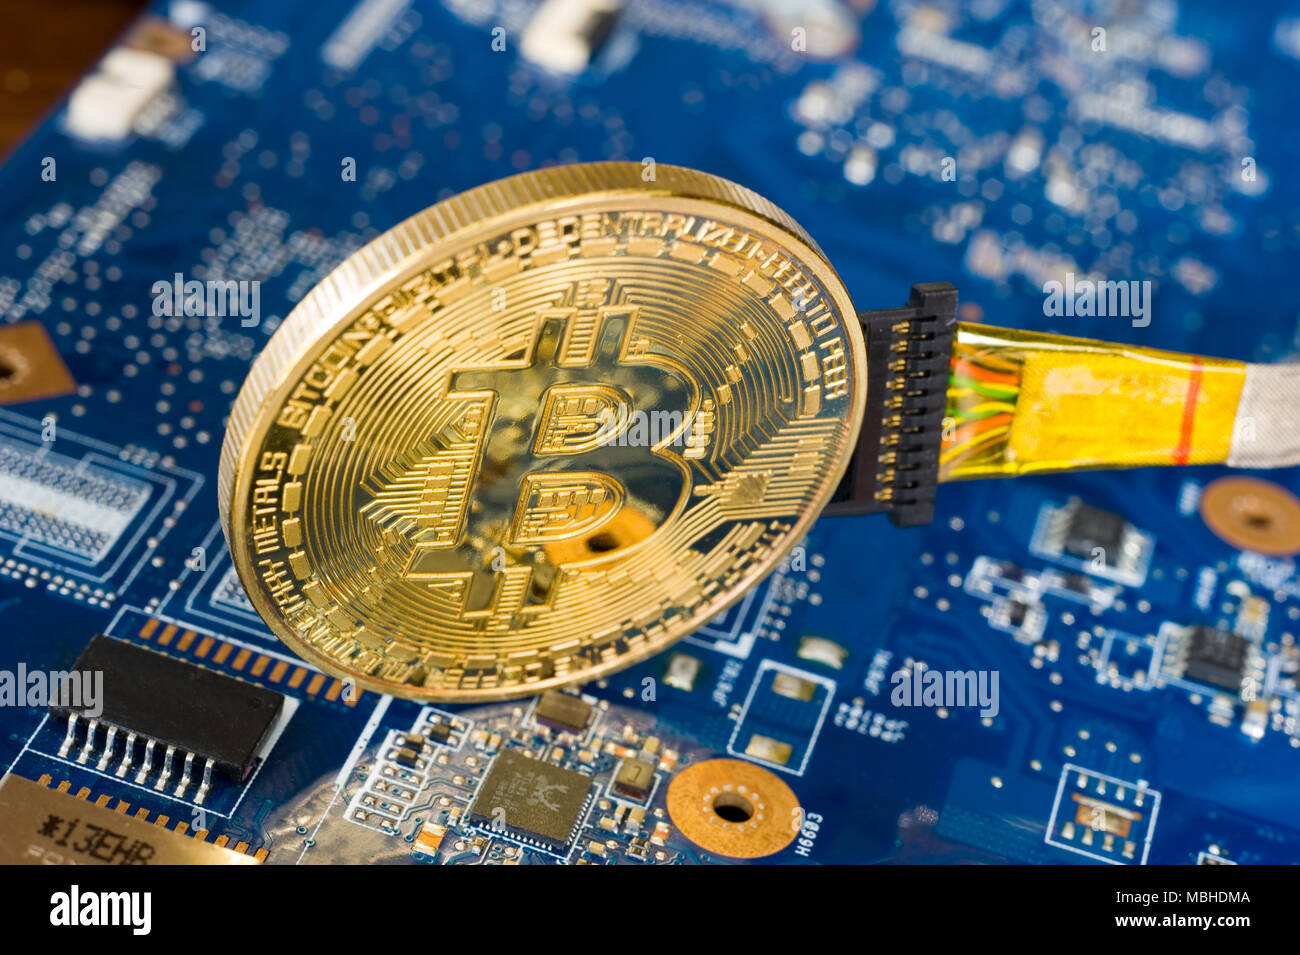 Bitcoin câblé sur la carte mère électronique permanent d'un ordinateur portable Banque D'Images